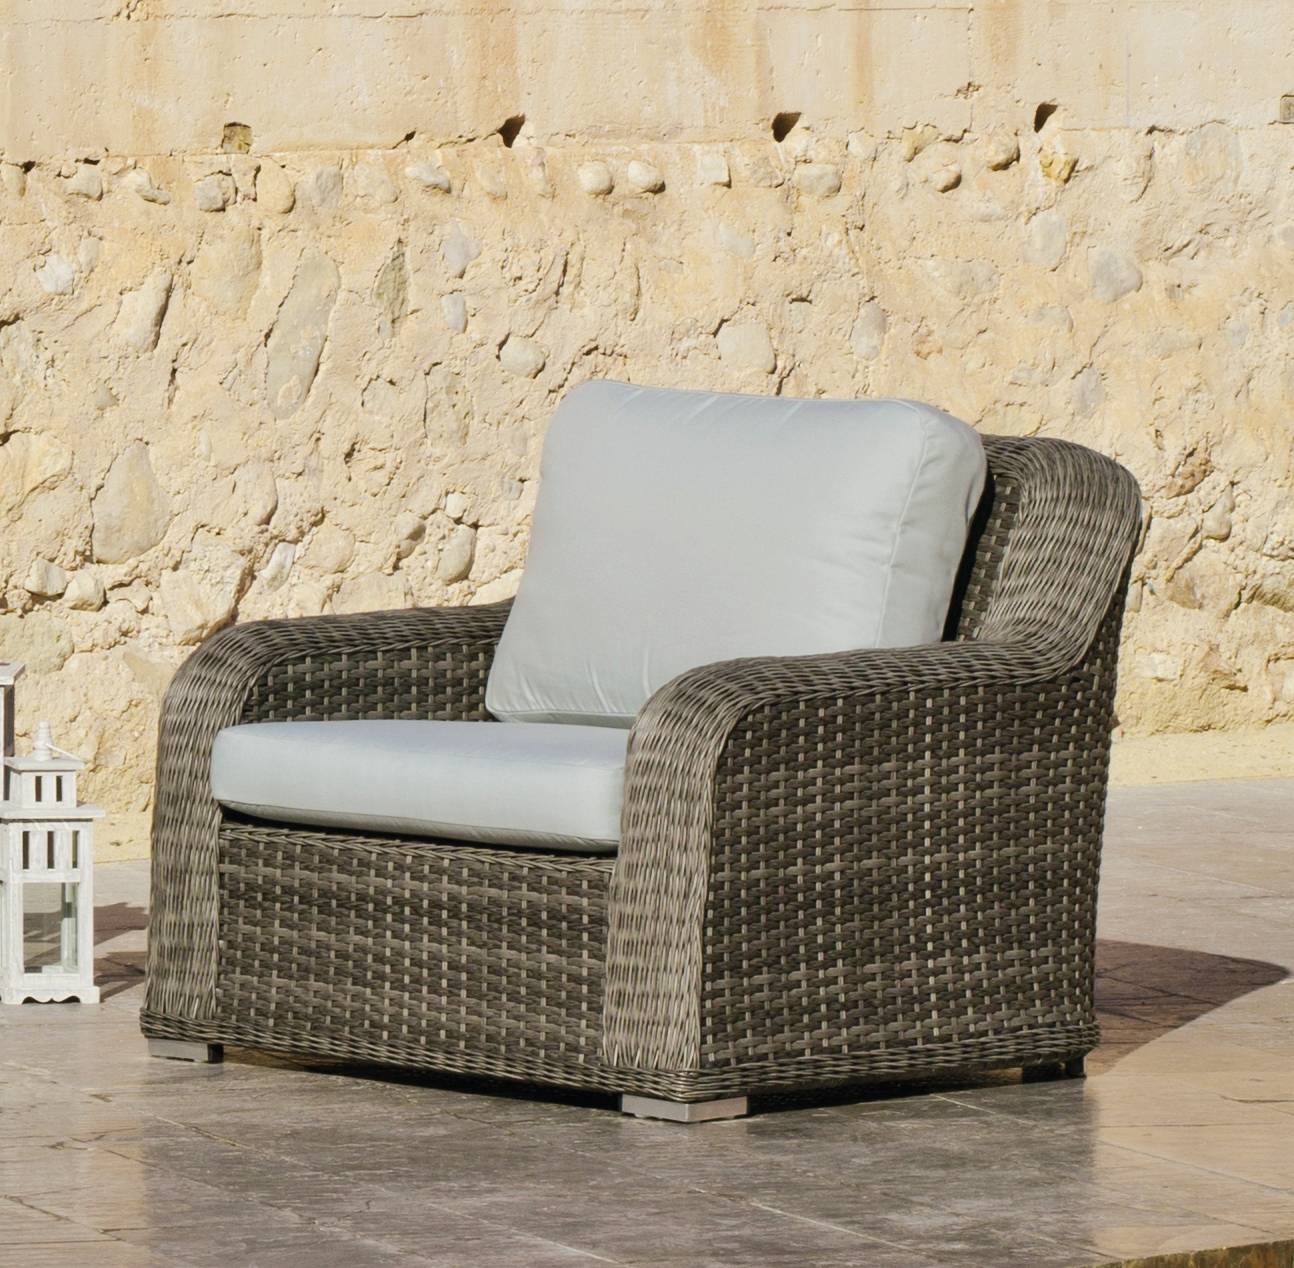 Set Médula Luxe Albarela-8 - Conjunto lujo de médula sintética color gris: 1 sofá 4 plazas + 2 sillones + mesa de centro.